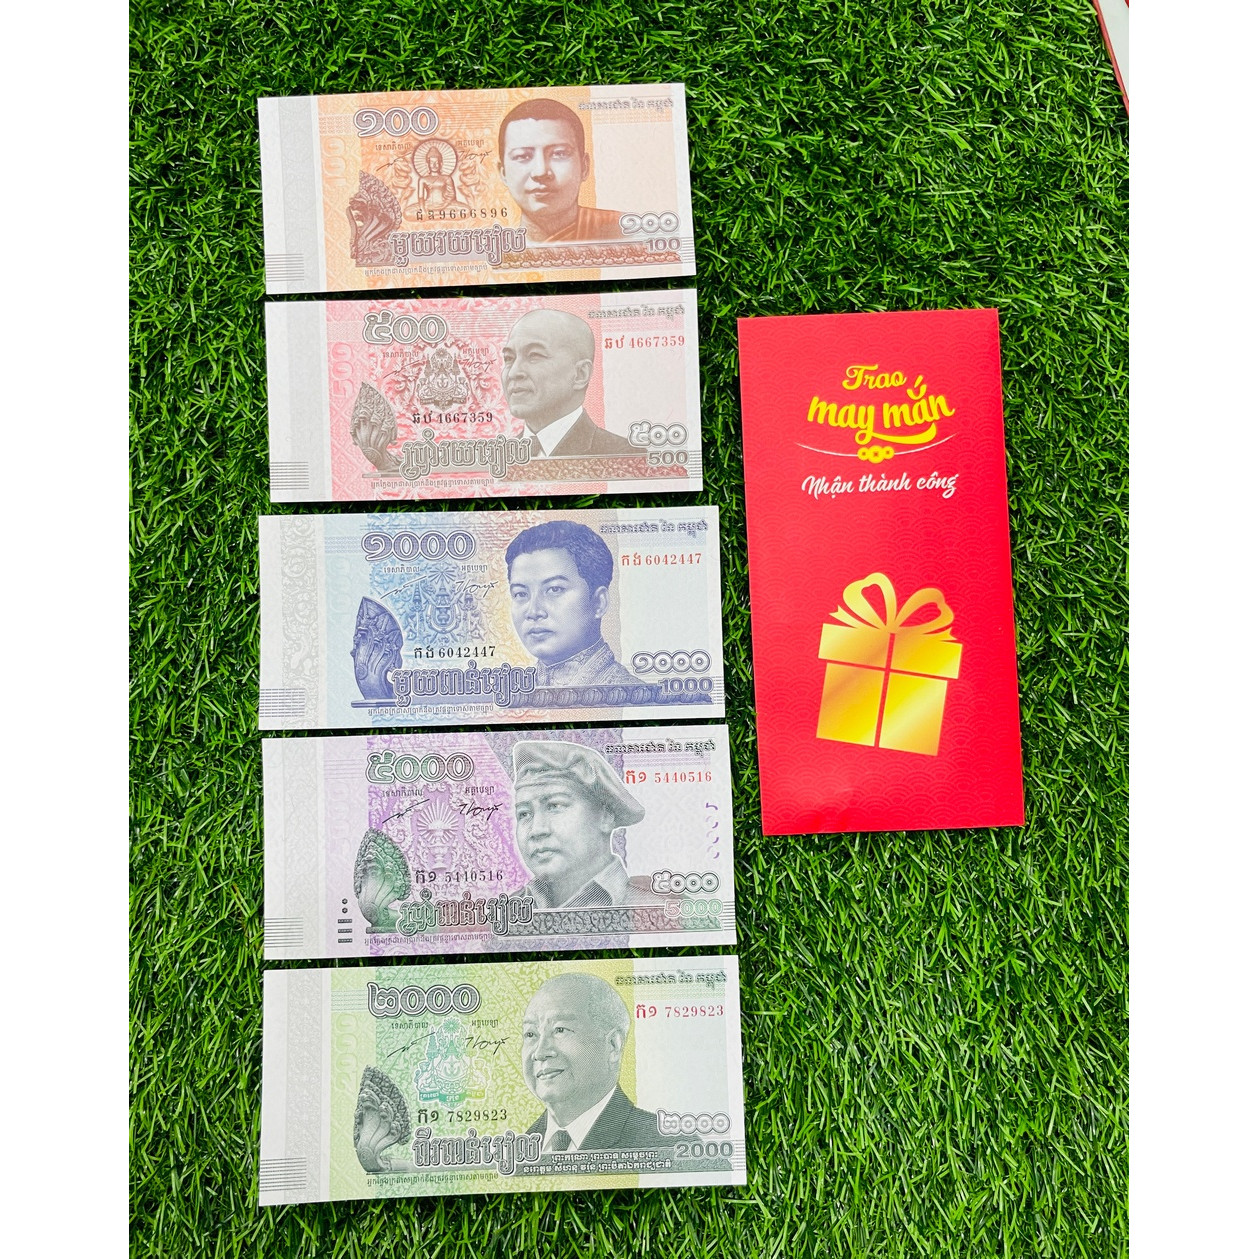 Bộ tiền Campuchia 100 500 1000 2000 5000 Riels [5 TỜ] hình ảnh chùa nổi tiếng, mới 100% UNC, tặng bao lì xì The Merrick Mint